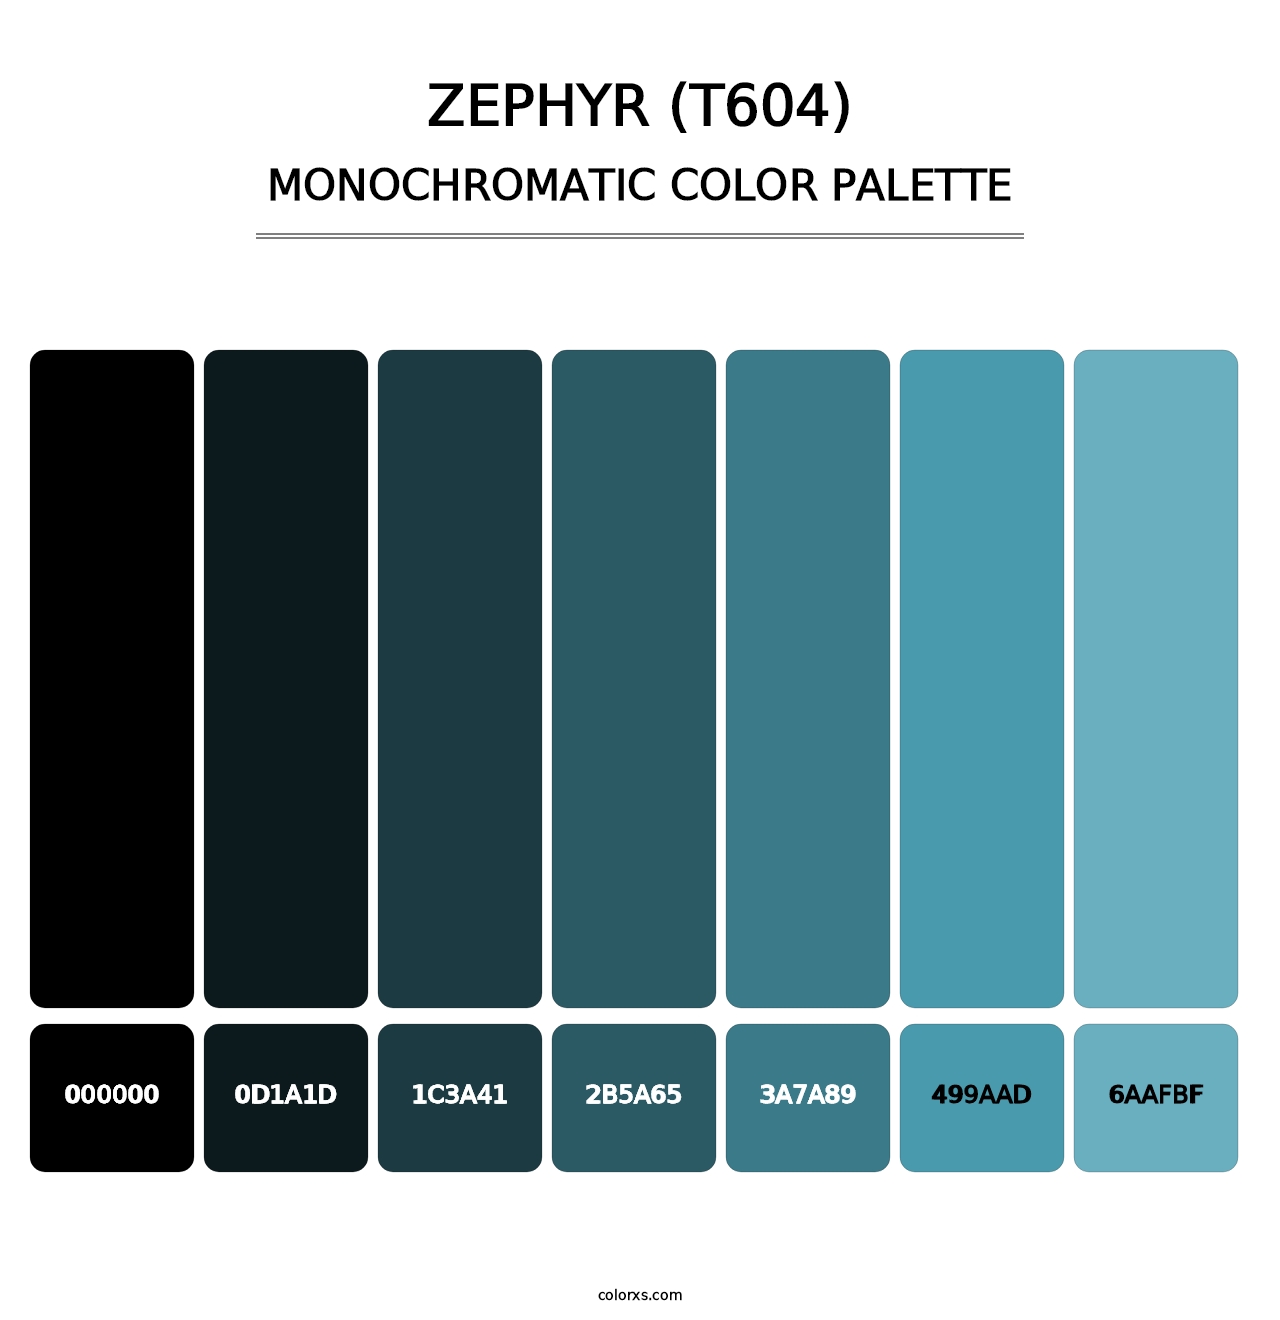 Zephyr (T604) - Monochromatic Color Palette